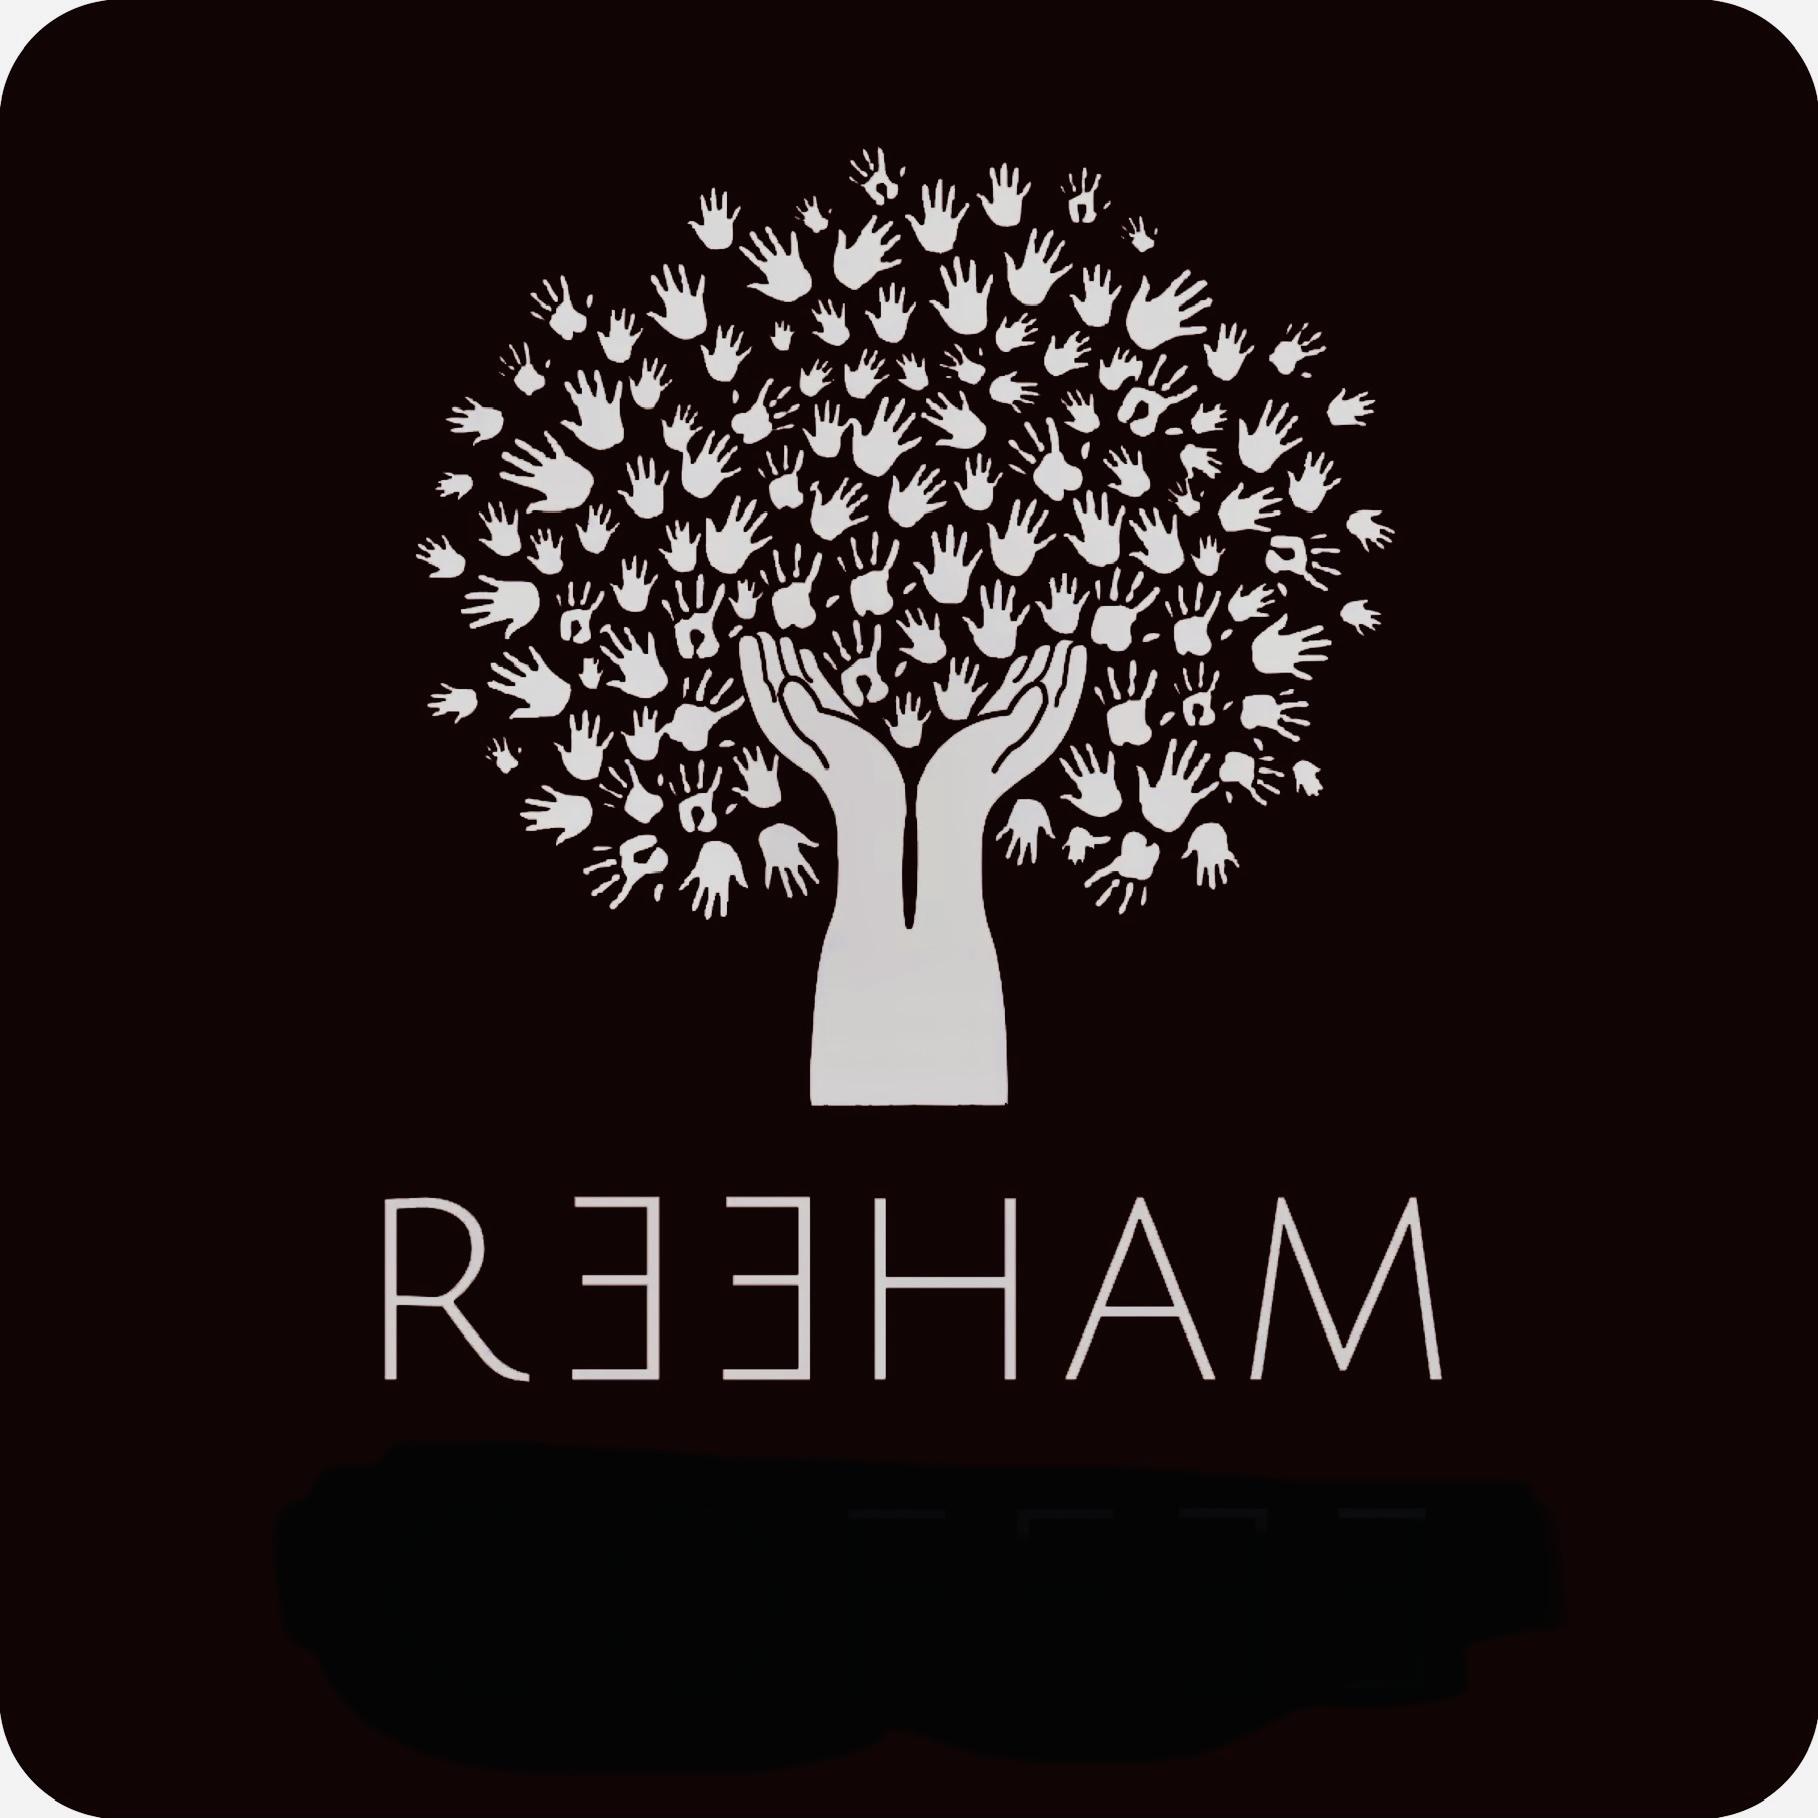 Reeham Coffee / startup von Berlin / Background